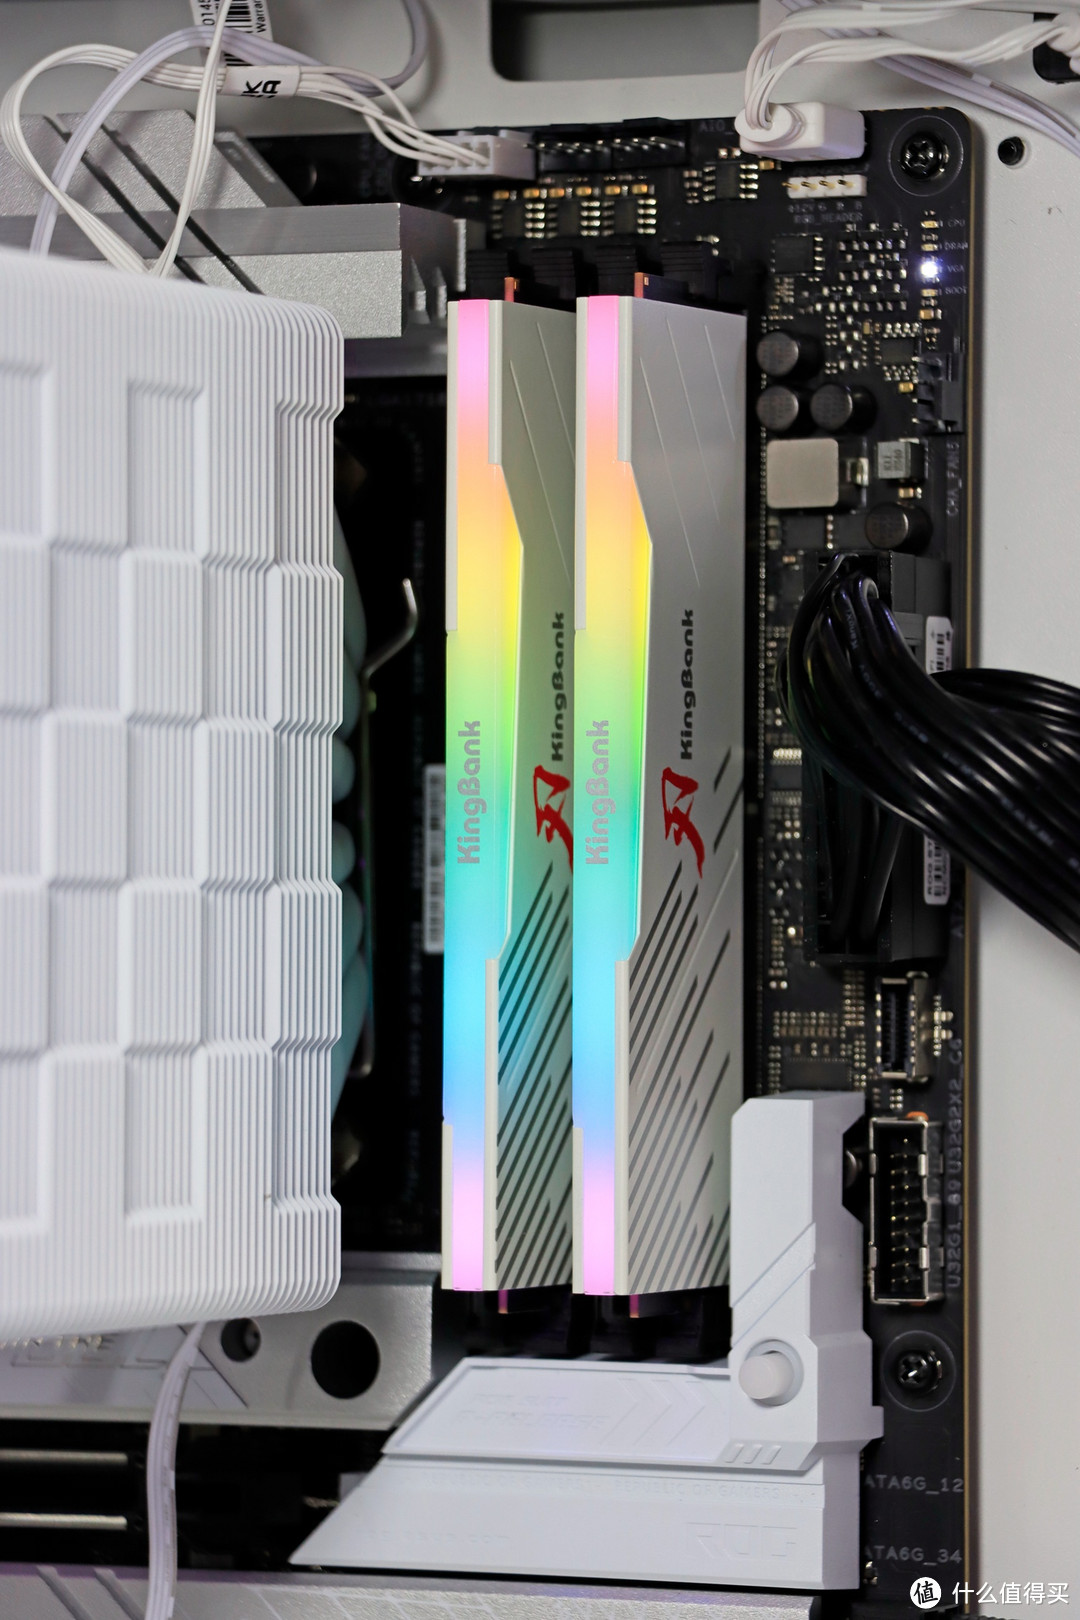 金百达 白刃 DDR5 6800 24G*2 RGB 搭配 AMD 8700G 怎么样？